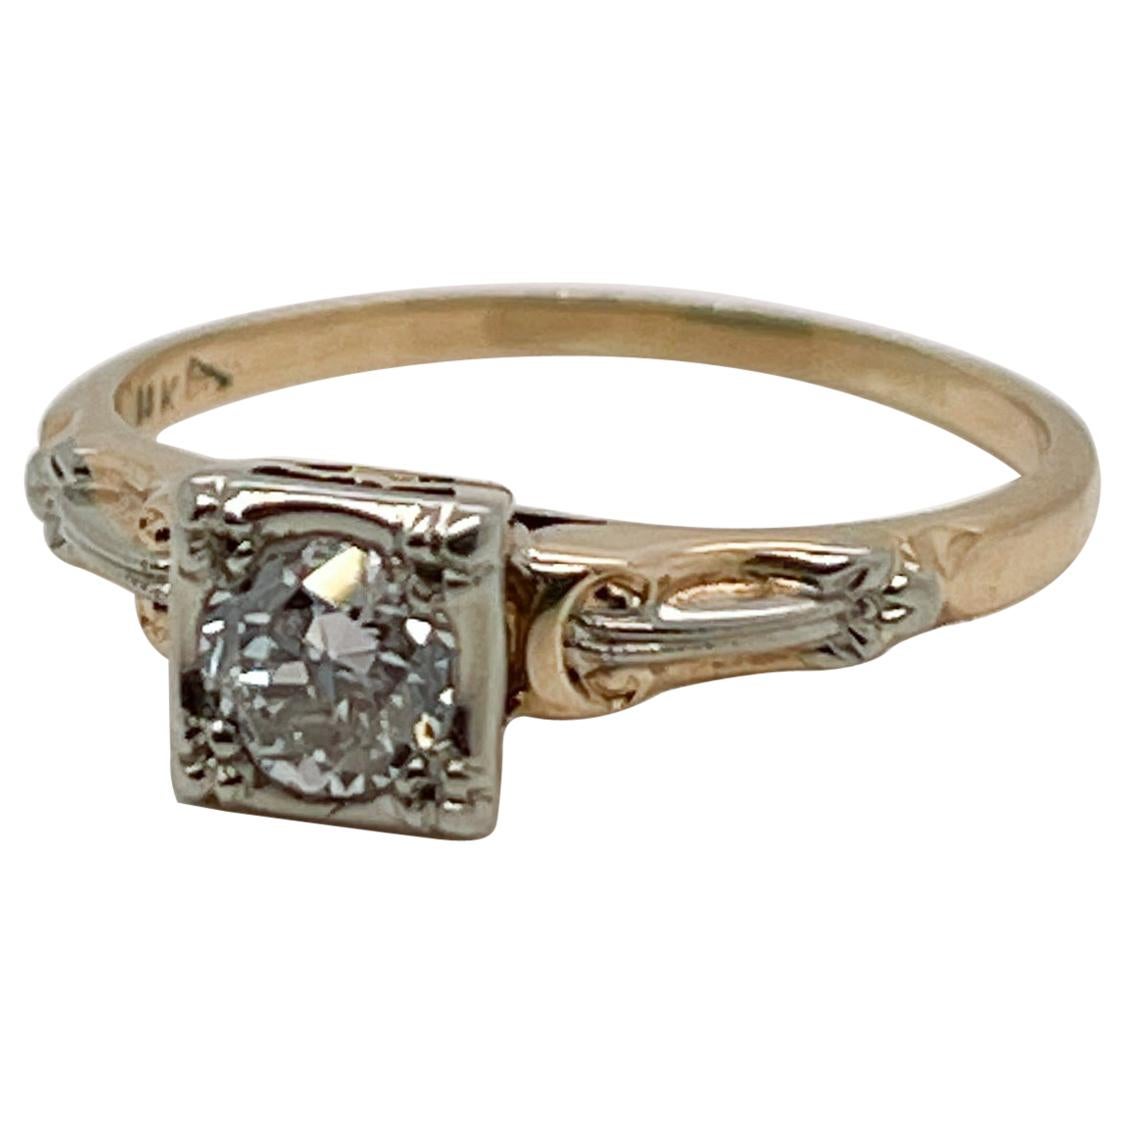 Antique Edwardian 14 Karat Gold & Diamond Engagement Ring